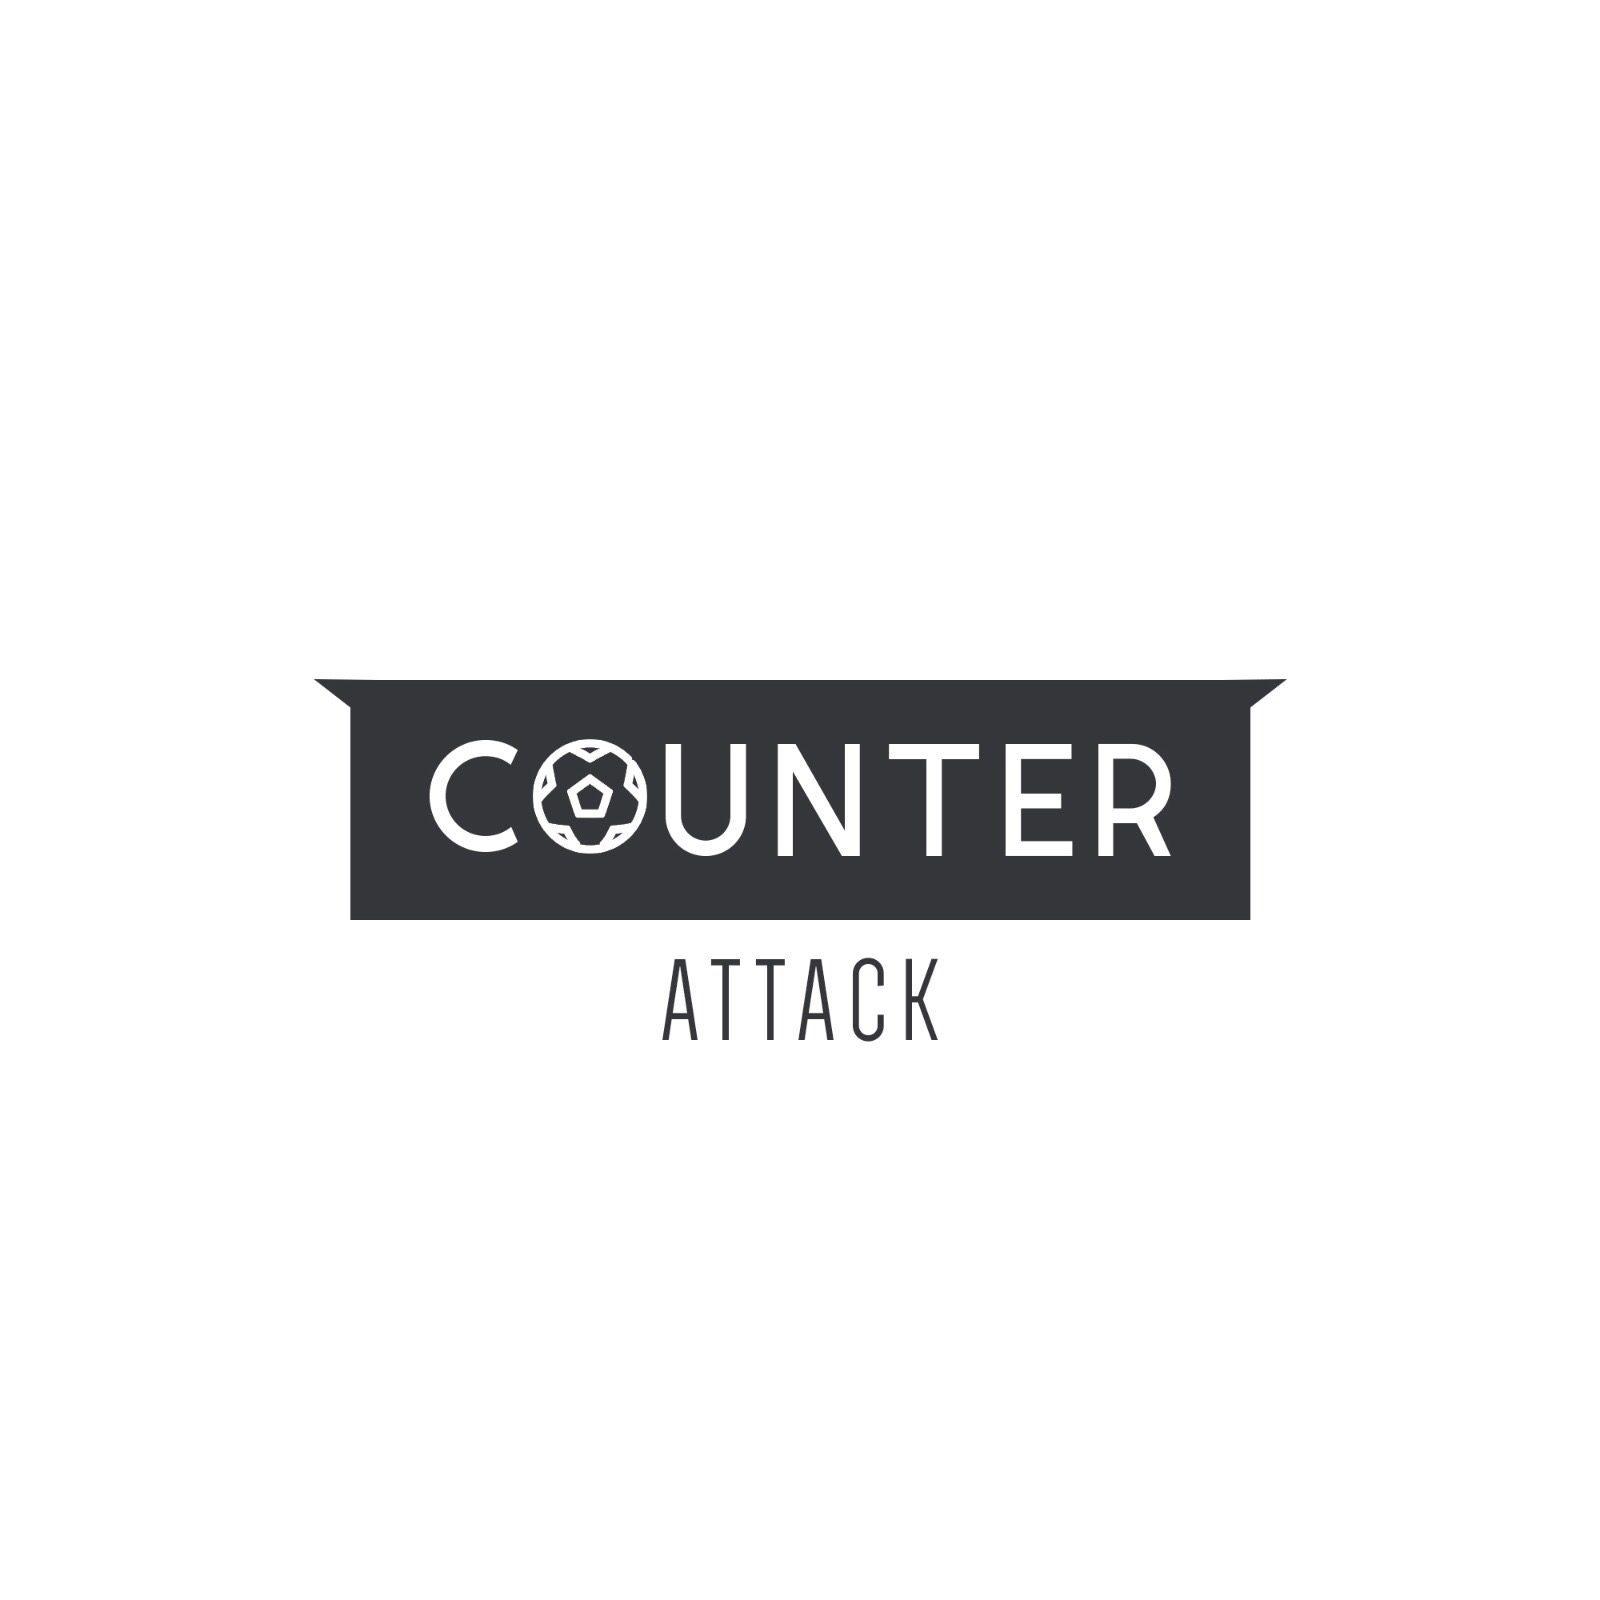 Counter Attack - Episode 66 - Chris Hughton Unlucky To Be Sacked?